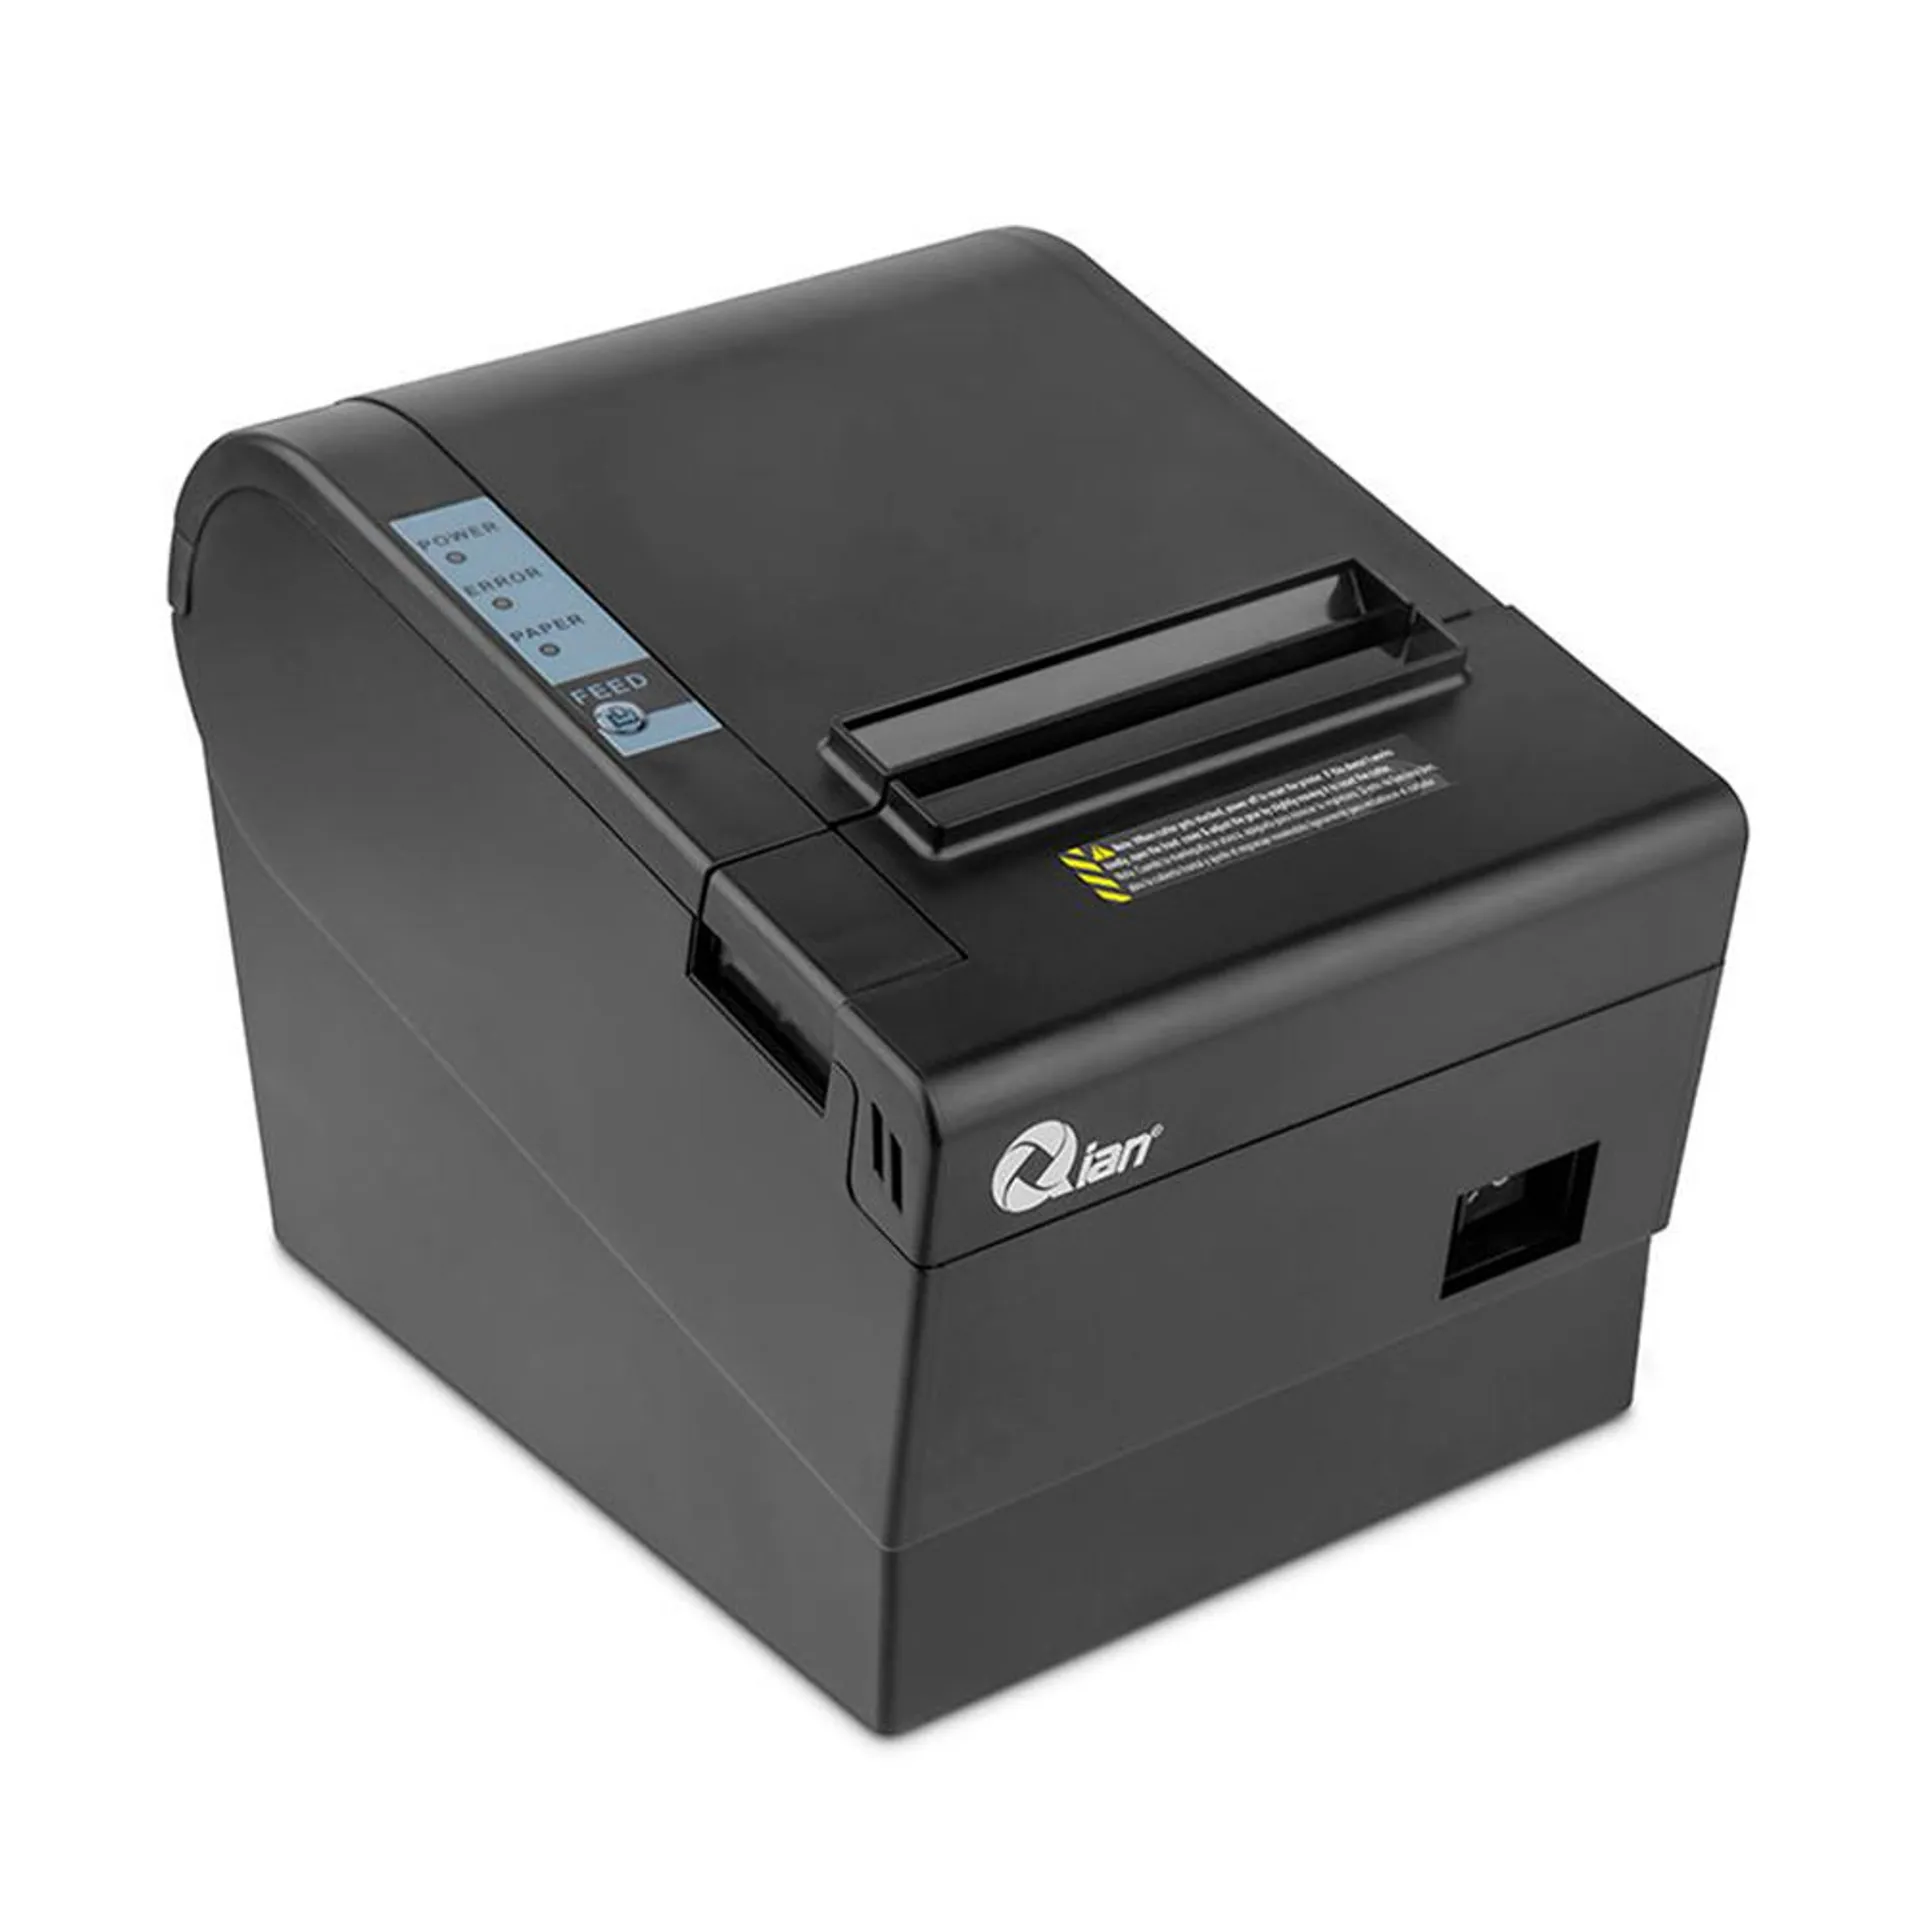 Impresora de Tickets / Qian QOP-T80UL-RI / Térmica Directa / USB / Negro / Con Autocortador / QOP-T80UL-RI